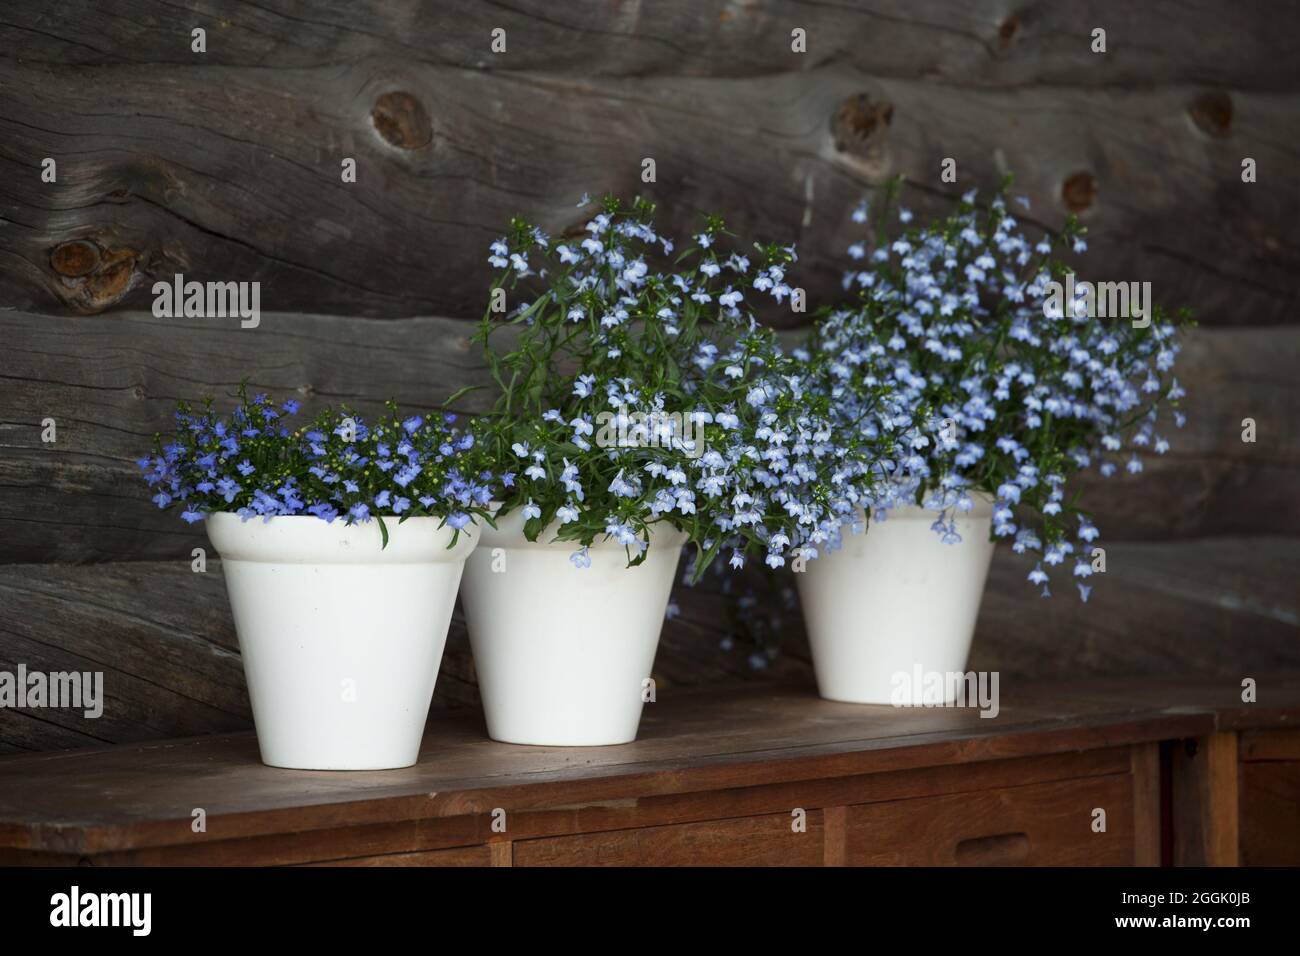 Lobelia, fleurs bleues, trois pots de fleurs blanches, arrière-plan de mur en rondins foncé Banque D'Images